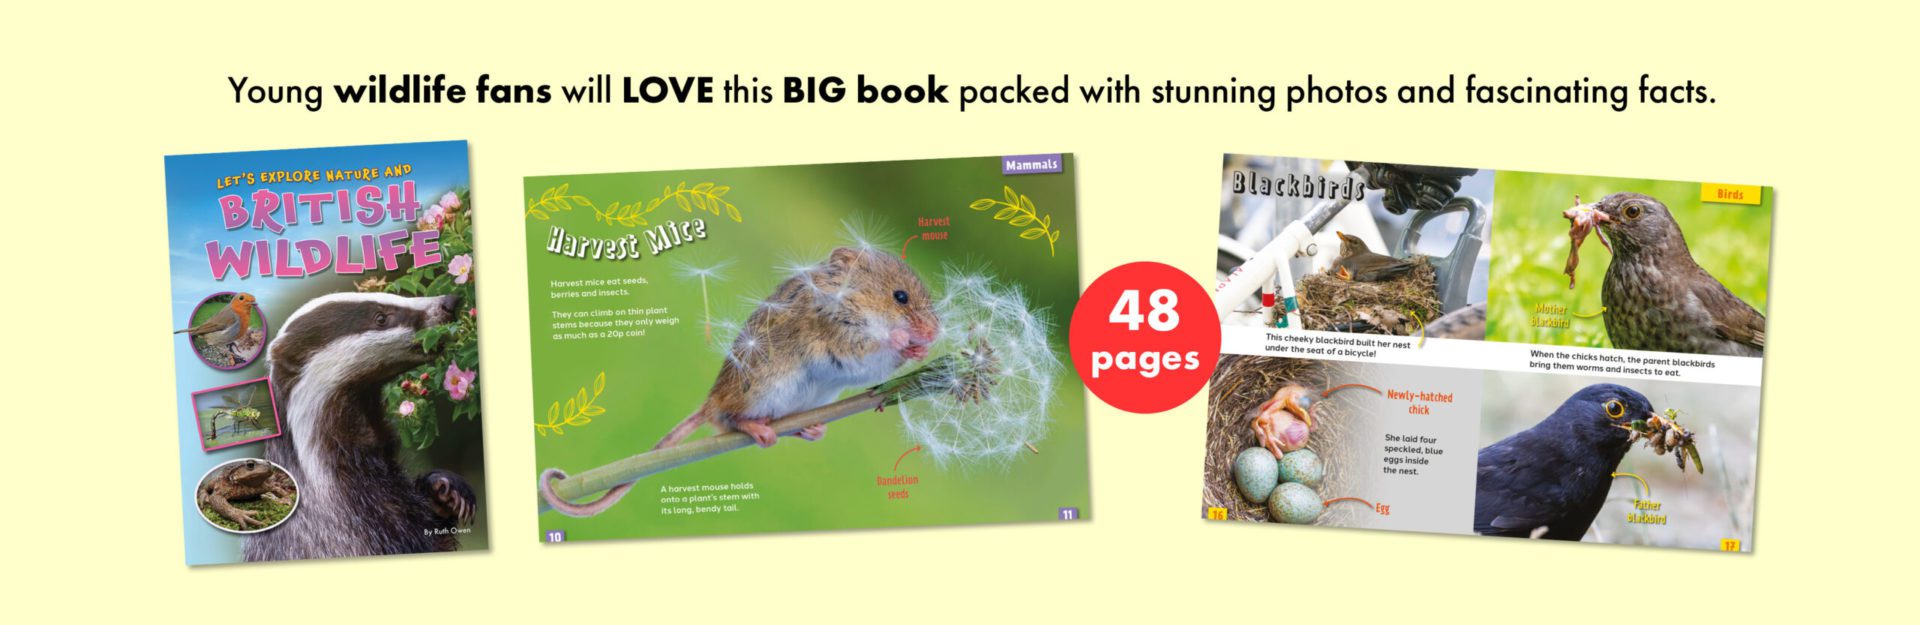 New British Wildlife book!